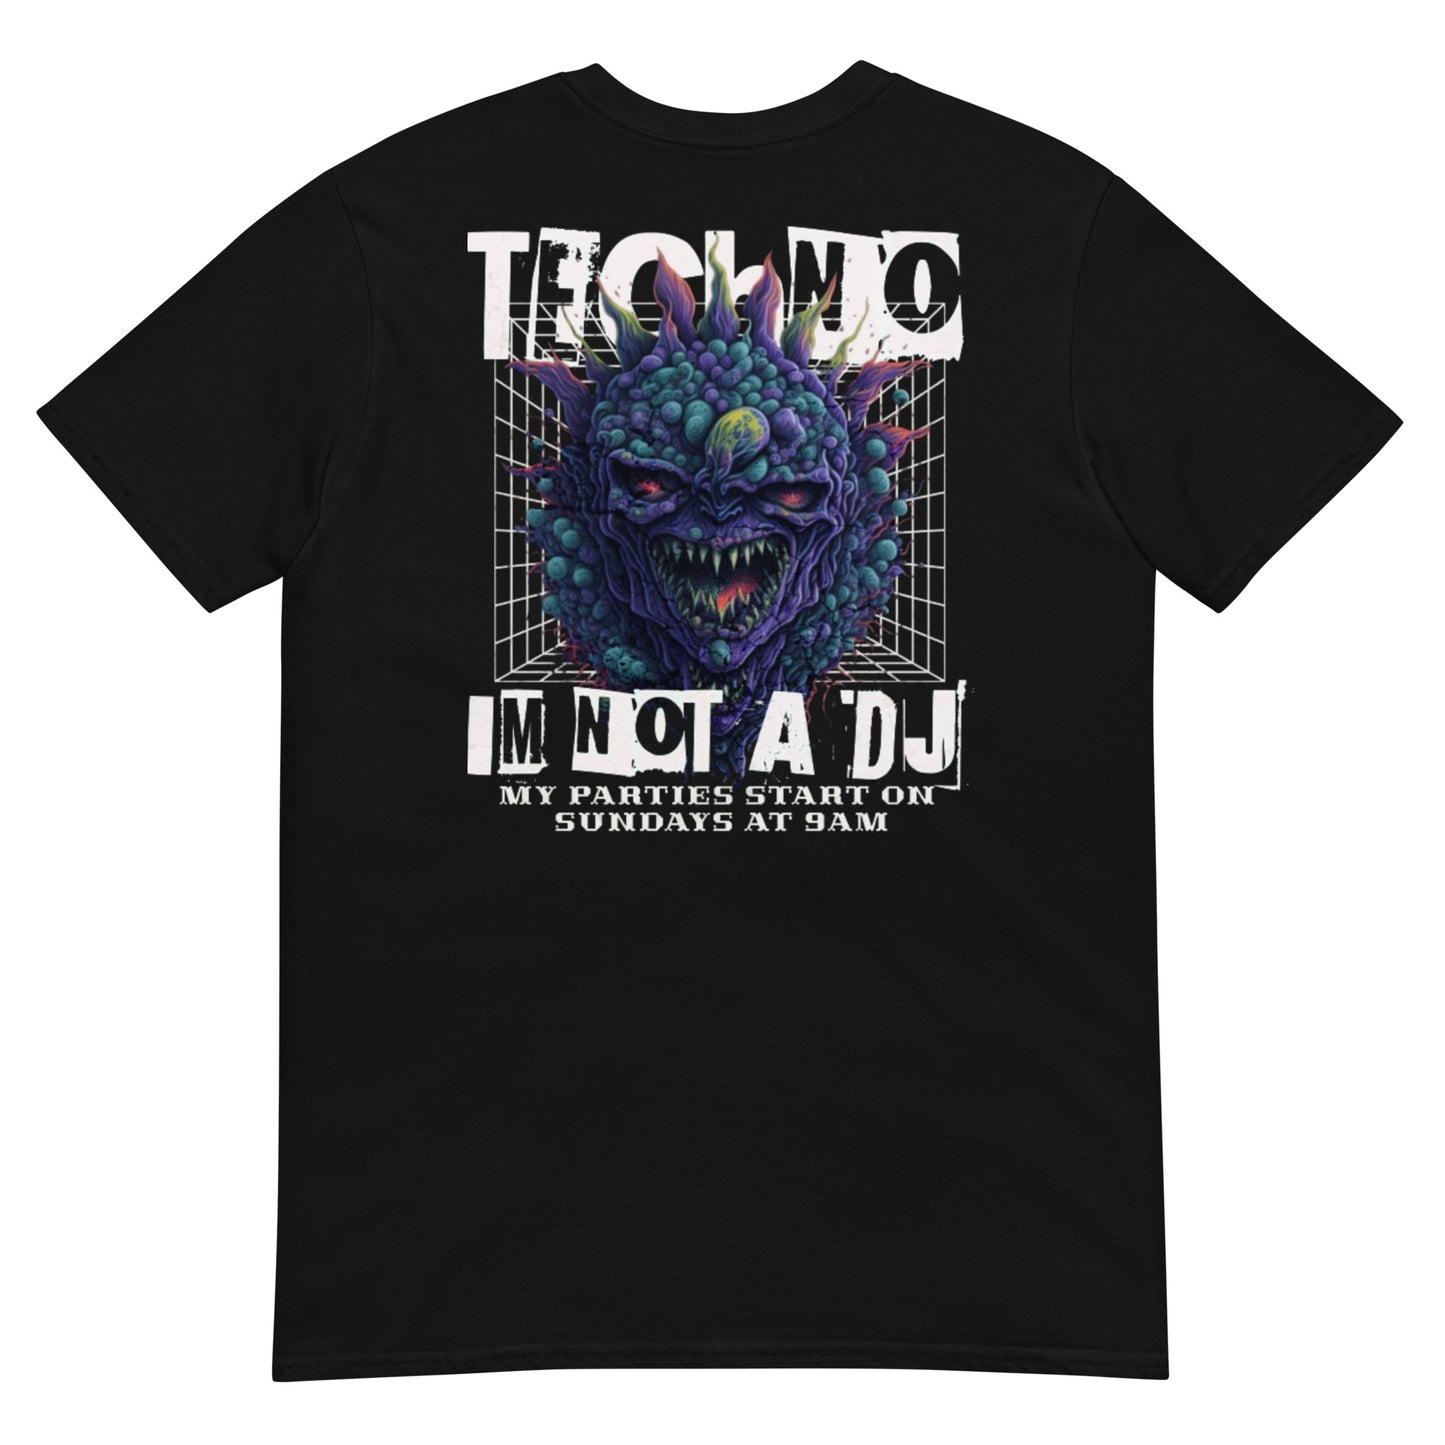 I'm not a DJ - Unisex T-Shirt